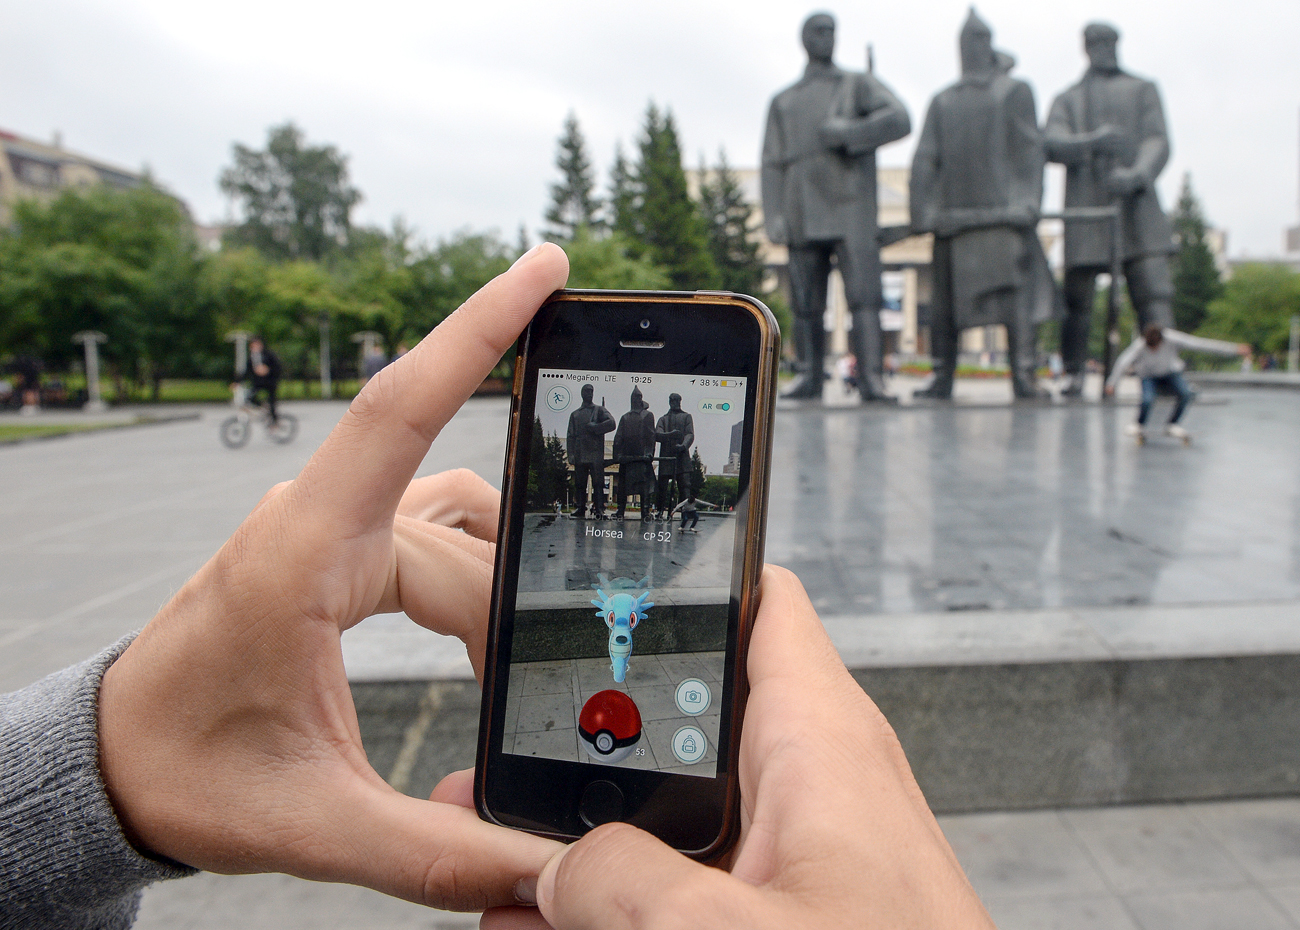 Покемон Го, играта од Нинтендо, на мобилен телефон во паркот од другата страна на улицата од операта Новосибирск.